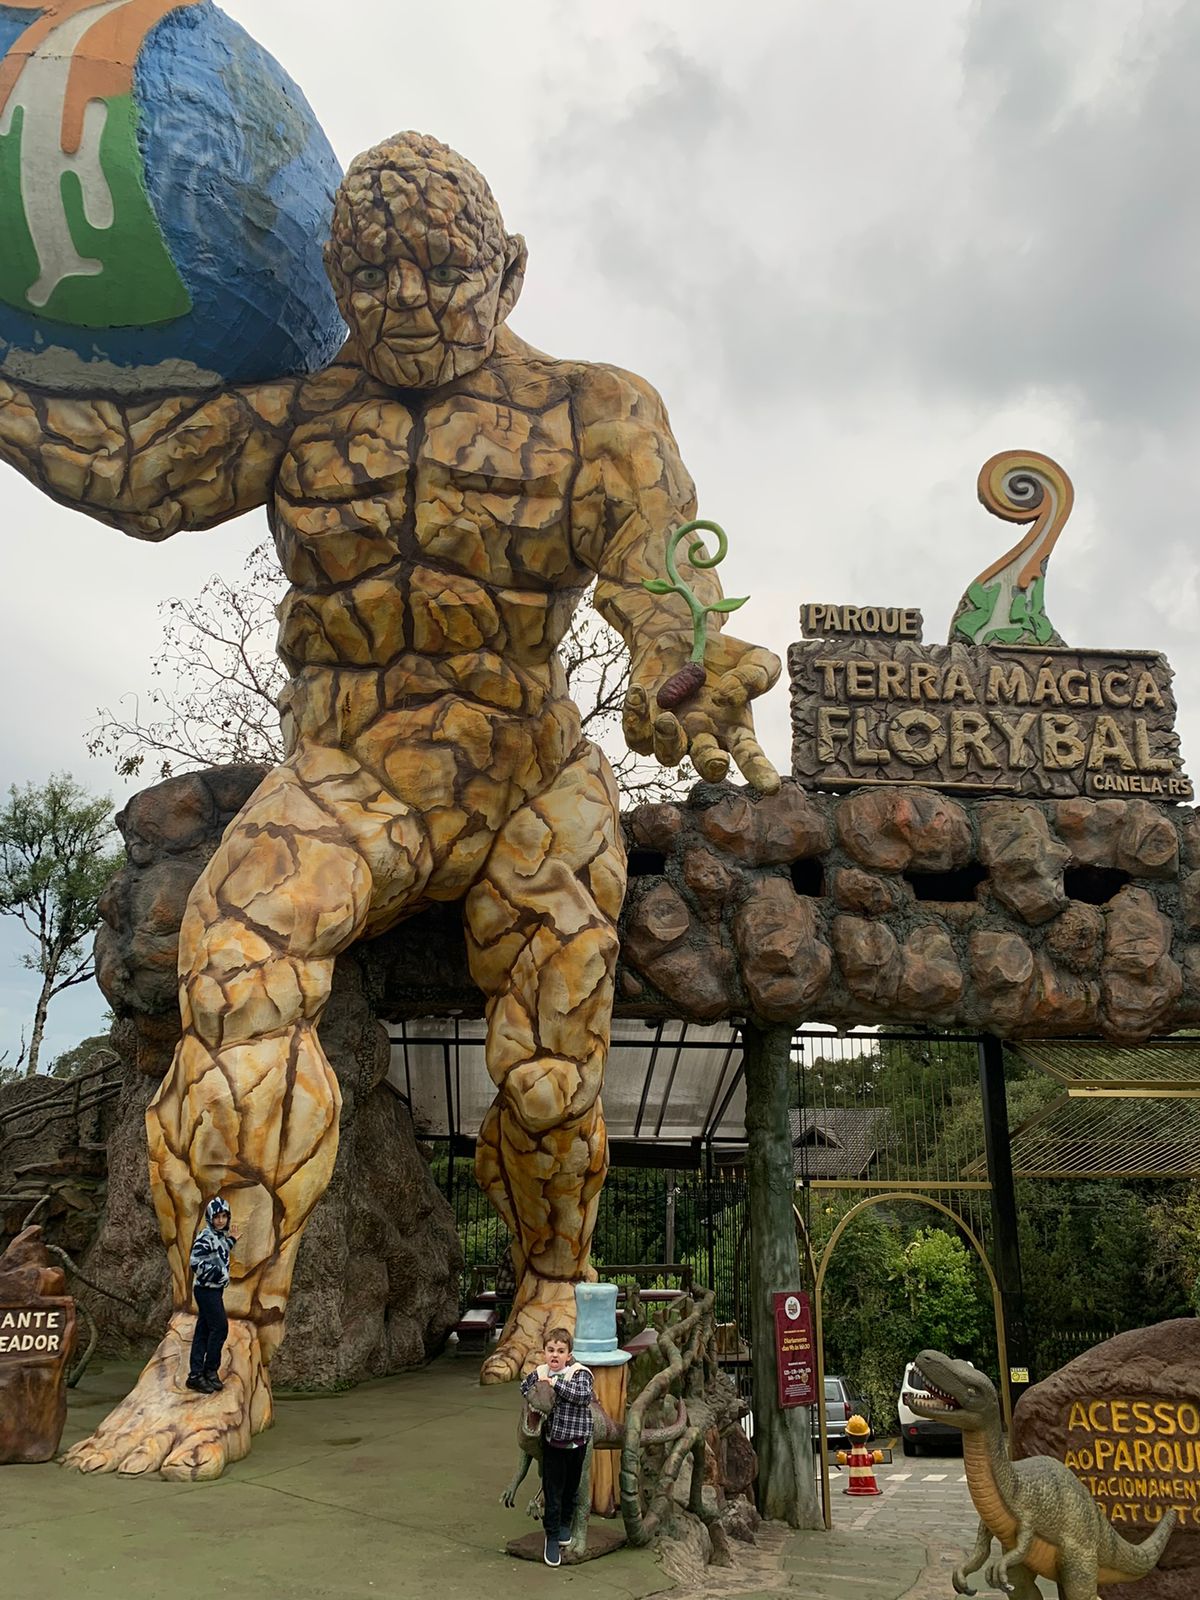 estatua gigante de pedra com fachada do parque florybal